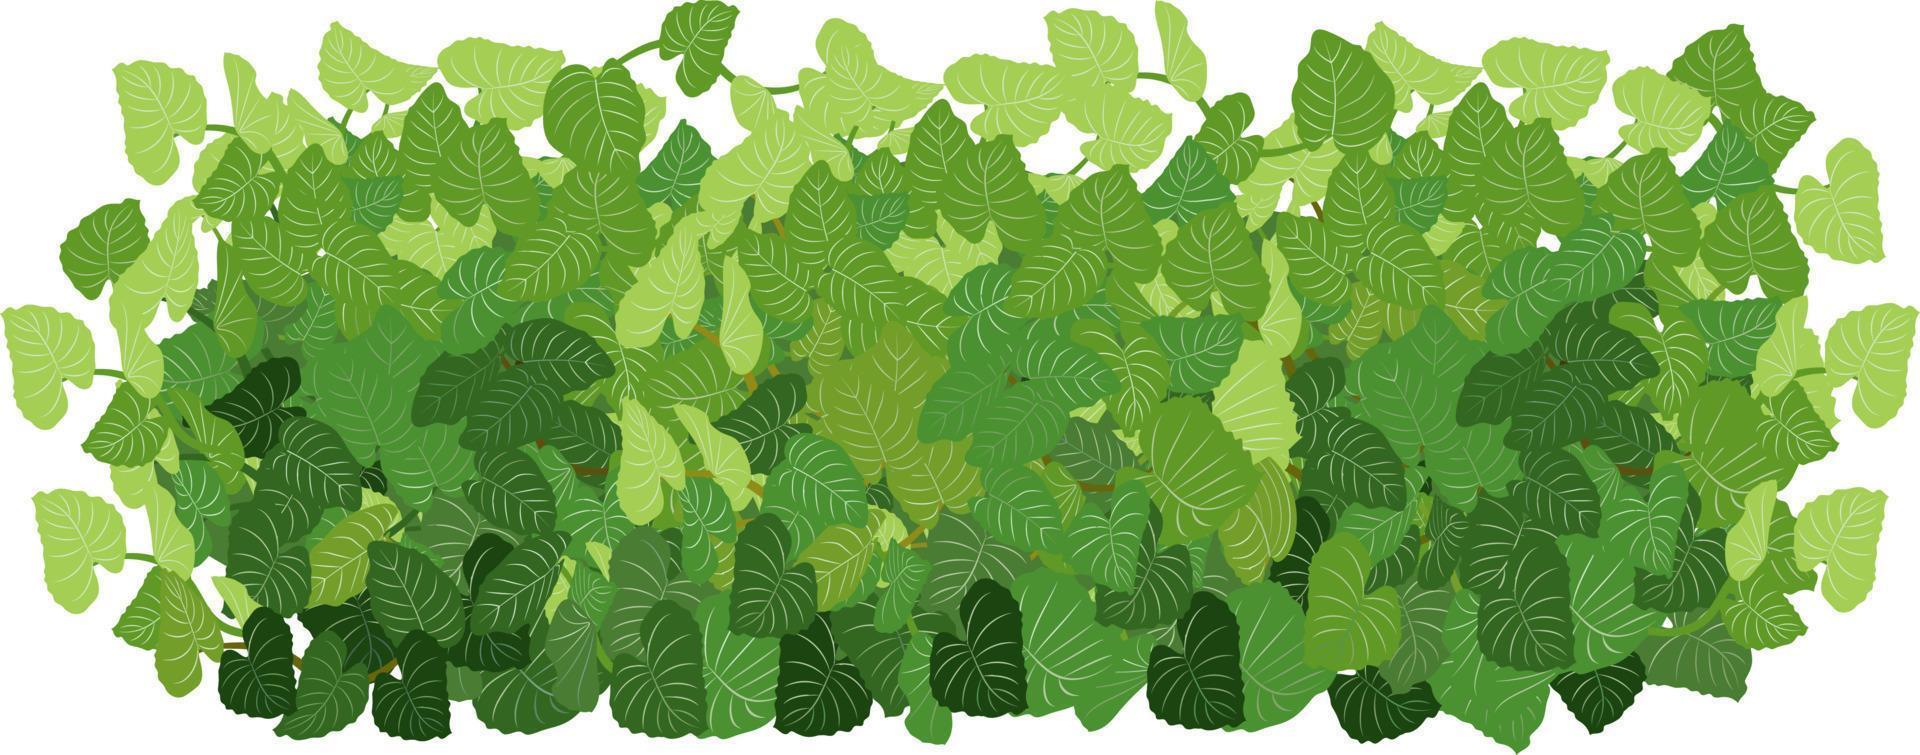 satz grüner zierpflanze in form einer hecke.realistischer gartenstrauch, saisonaler busch, buchsbaum, baumkronenbuschlaub. vektor